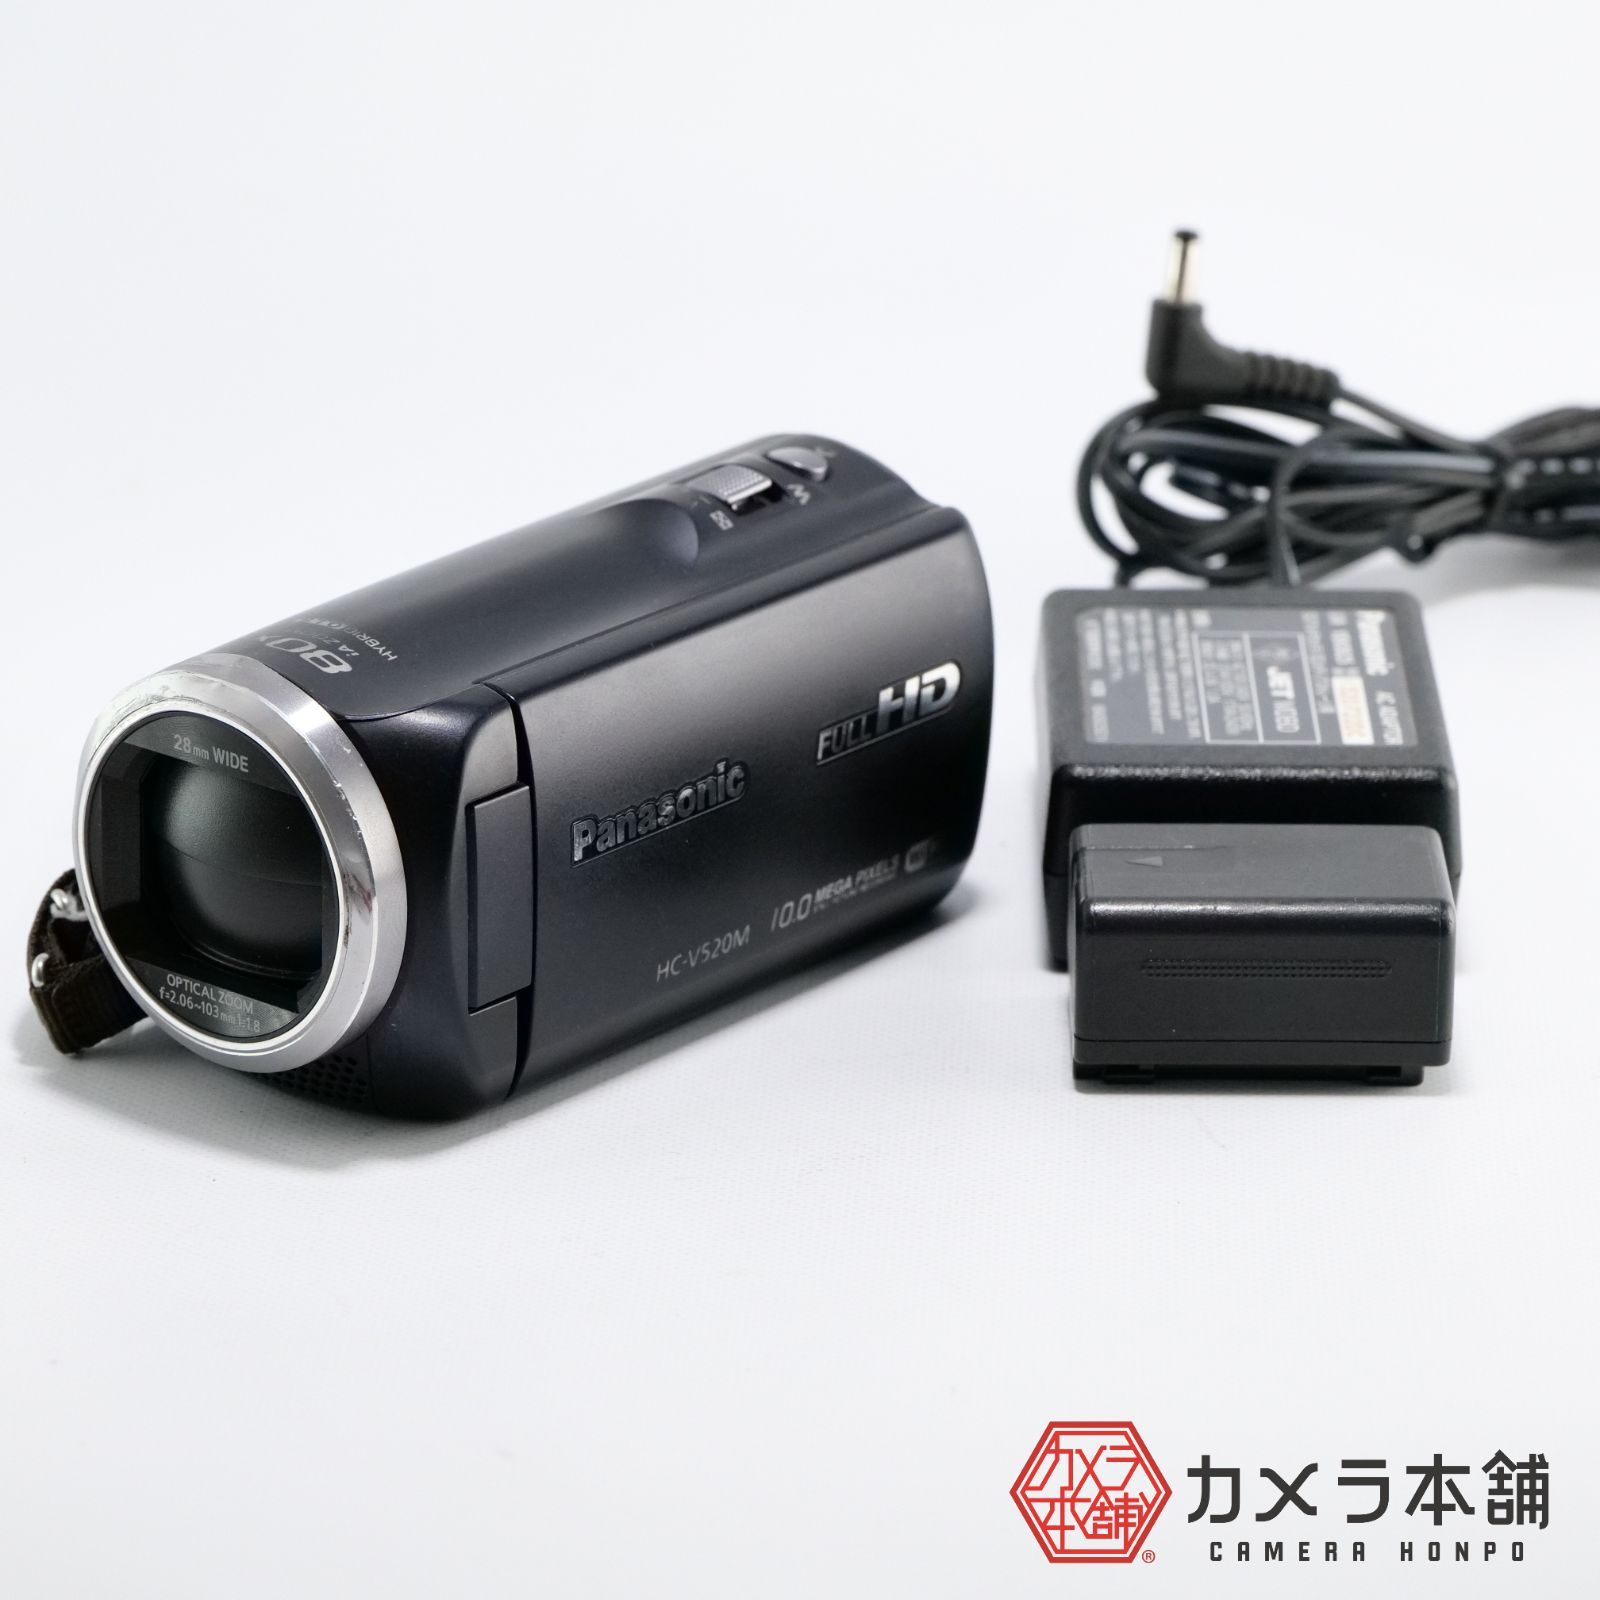 パナソニック デジタルハイビジョンビデオカメラ HC-V520M-A 32GB